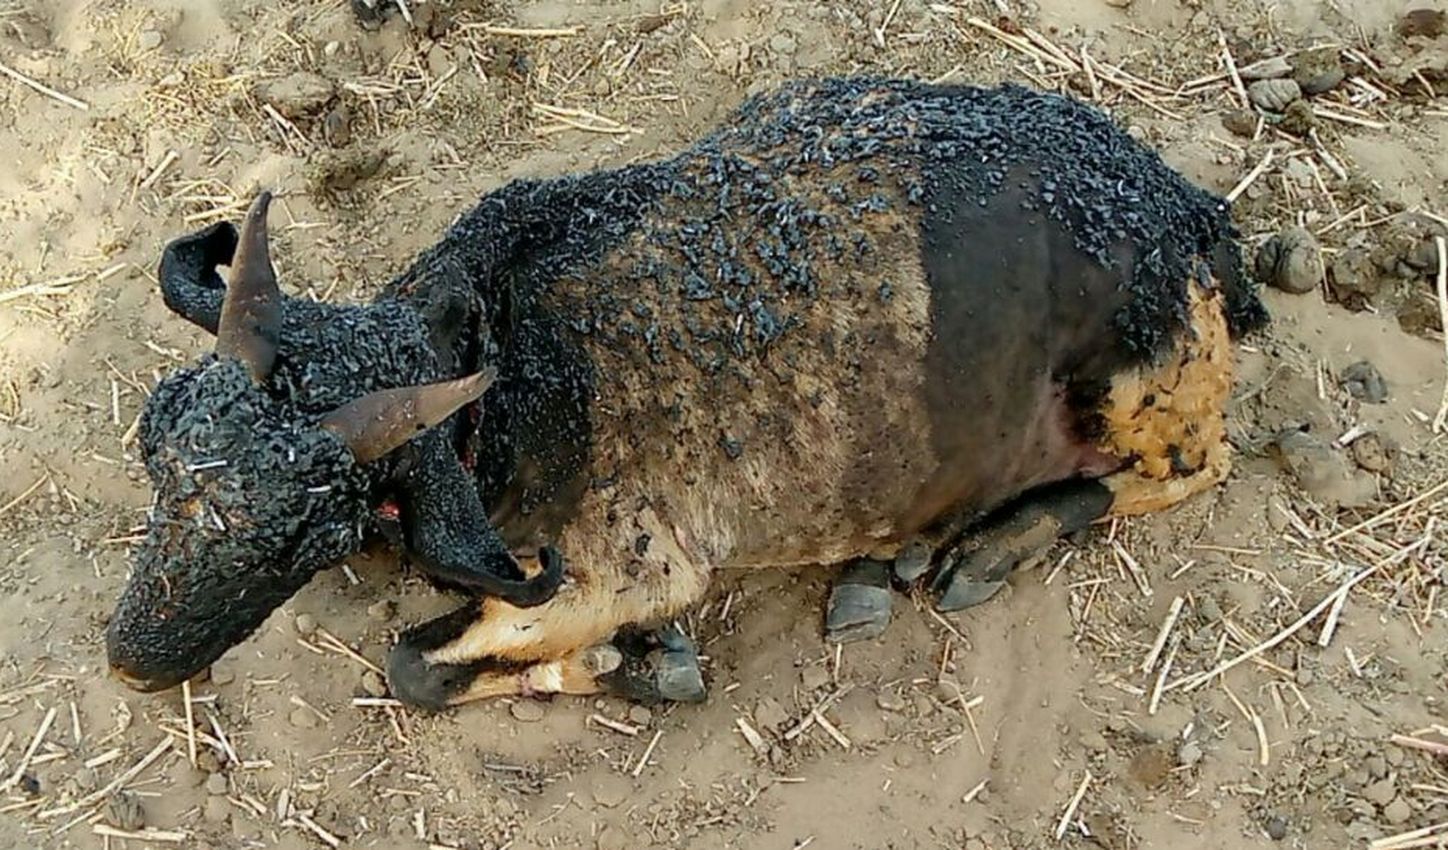 Fire news - आग से जिंदा जली 15 बकरियां, दर्दनाक Video देखकर आपकी रूह कांप जाएगी